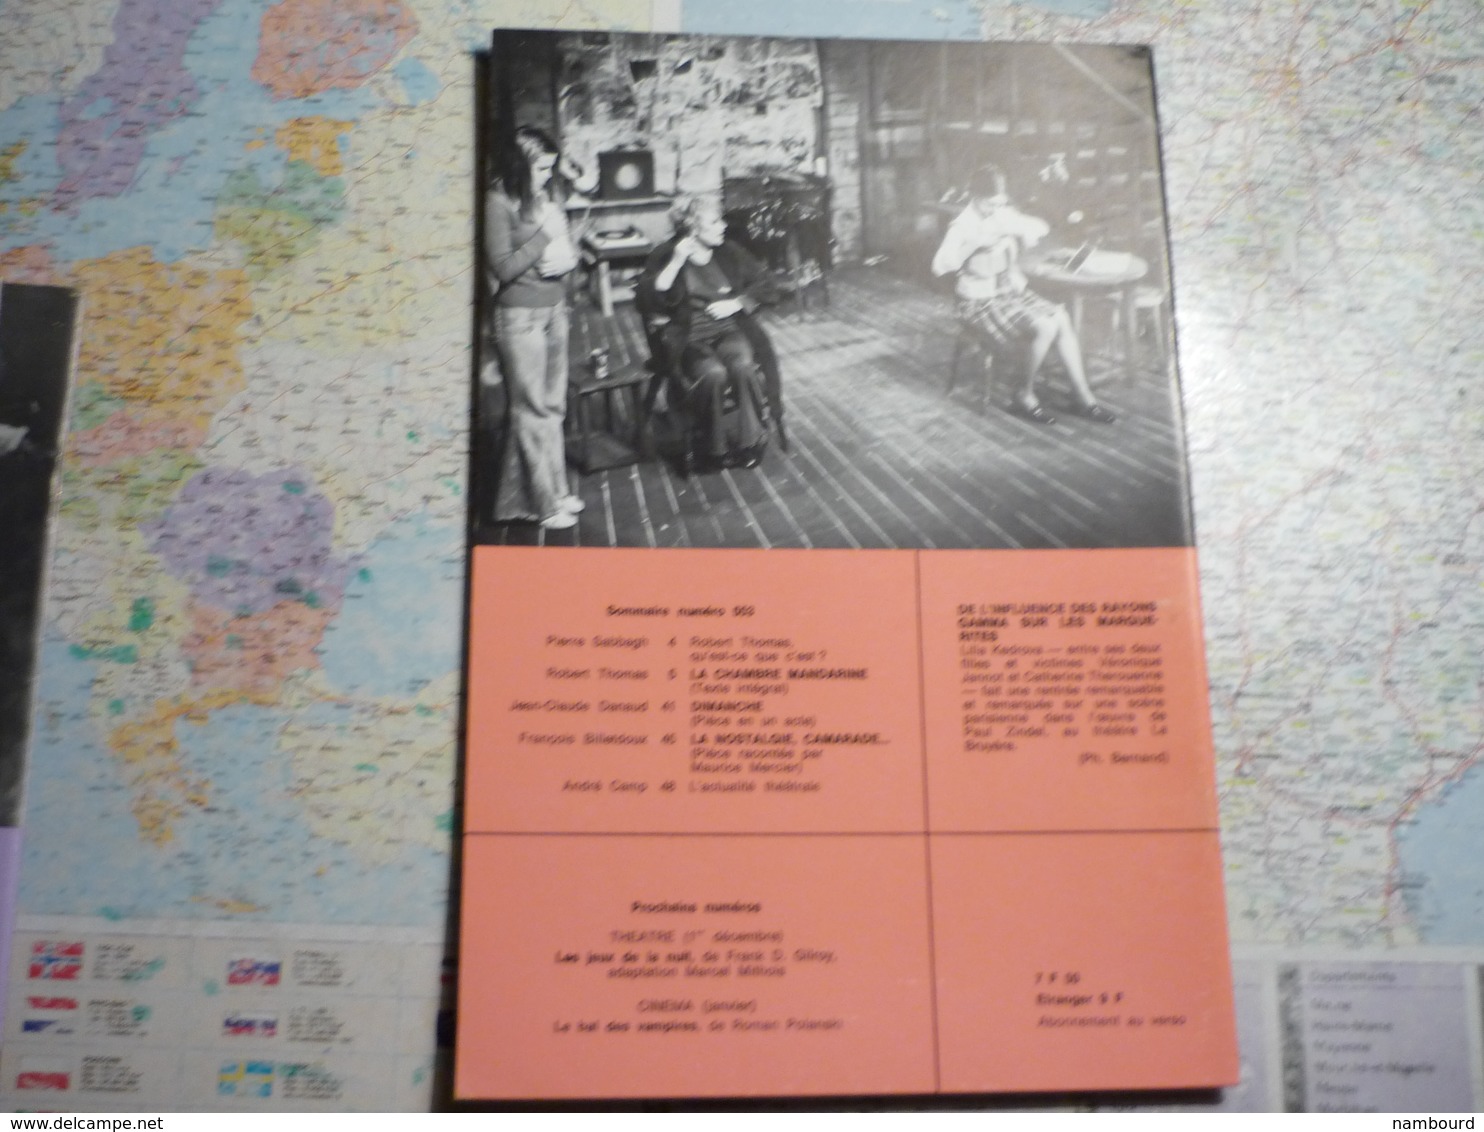 L'avant-scène Théâtre lot de 63 numéros consécutifs du N°501 (1-er Septembre 1972) au N°563 (1-er Mai 1975)